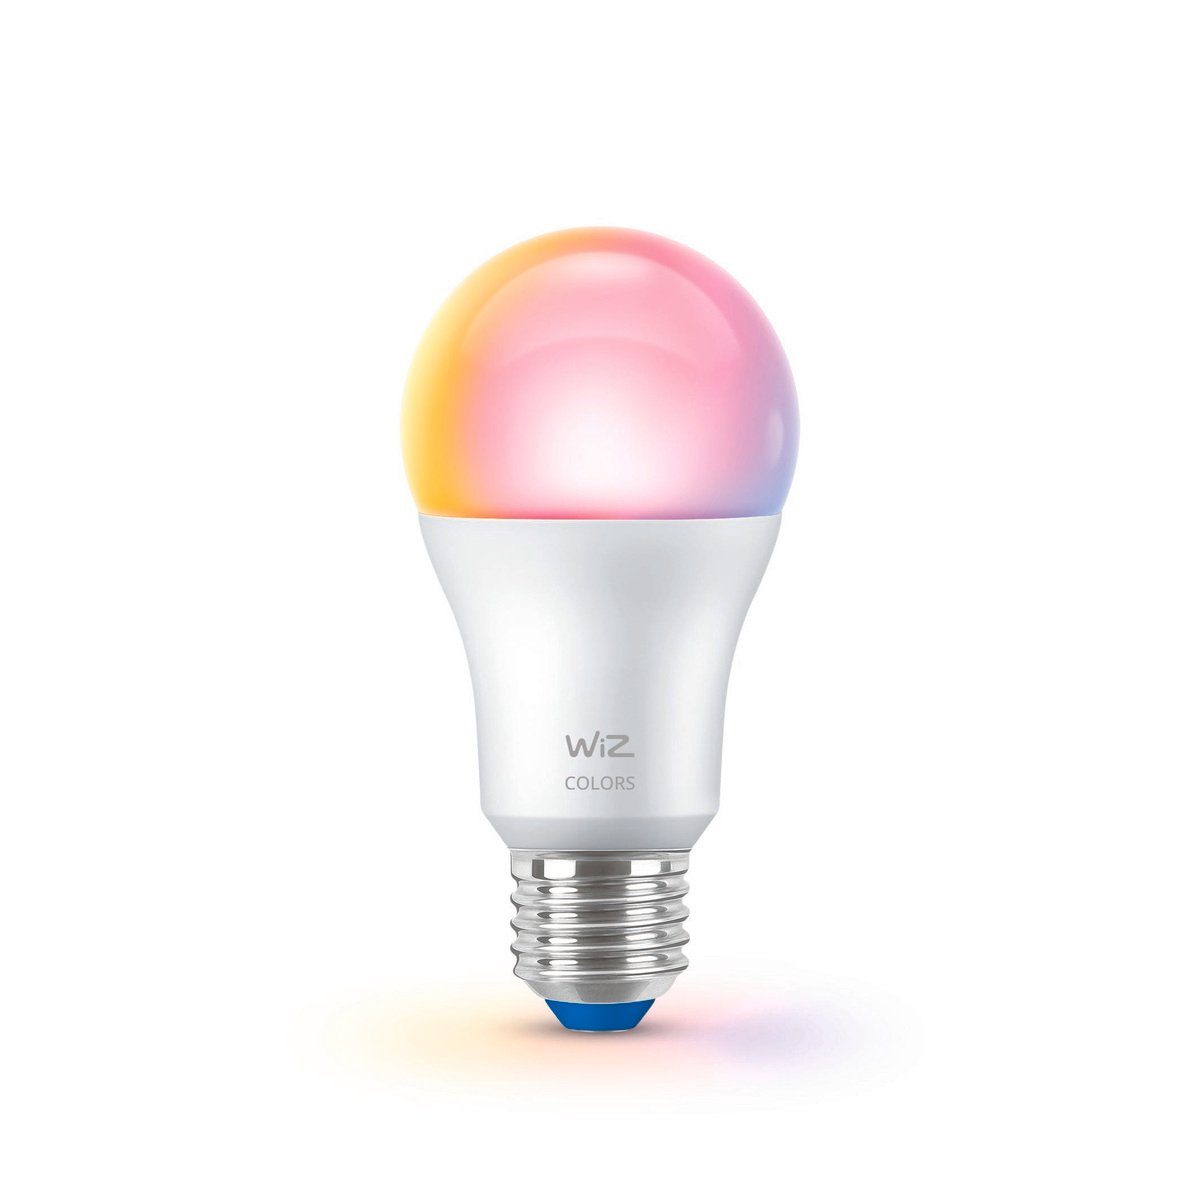 WiZ Smarte LED-Leuchte perfekte für fest Moment jeden LED Lichtszene Die integriert, des LED-Lampe, Tages persönliche